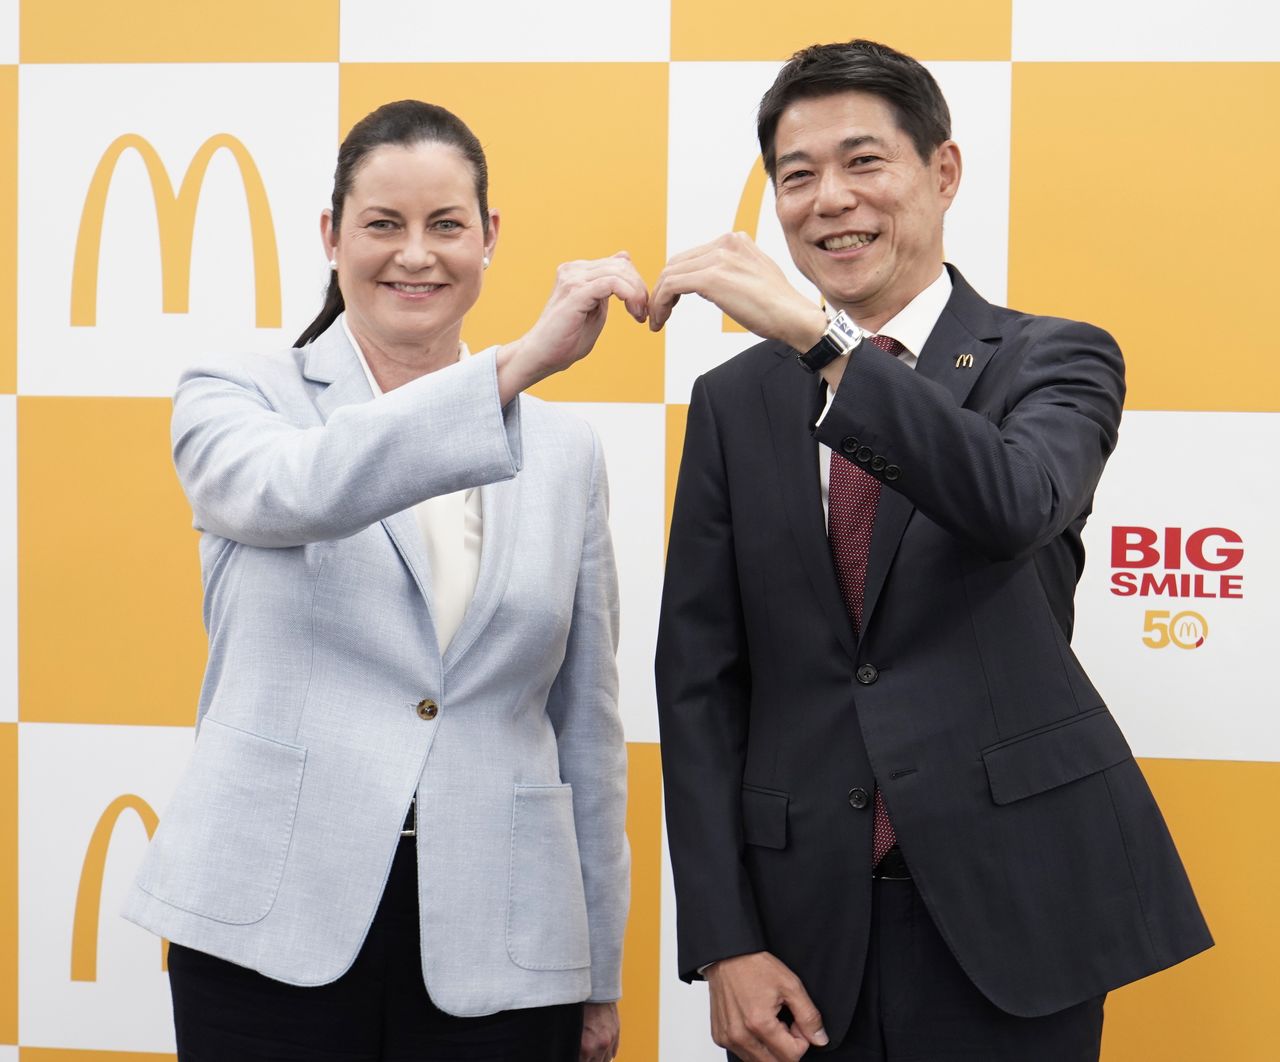 الرئيس التنفيذي لشركة ماكدونالدز اليابان سارة كازانوفا في فبراير/ شباط 2021 مع خليفتها في مارس 2021 السيد هيرو تاموتسو في مقر الشركة في طوكيو. بإذن من ماكدونالدز اليابان؛ جيجي برس.